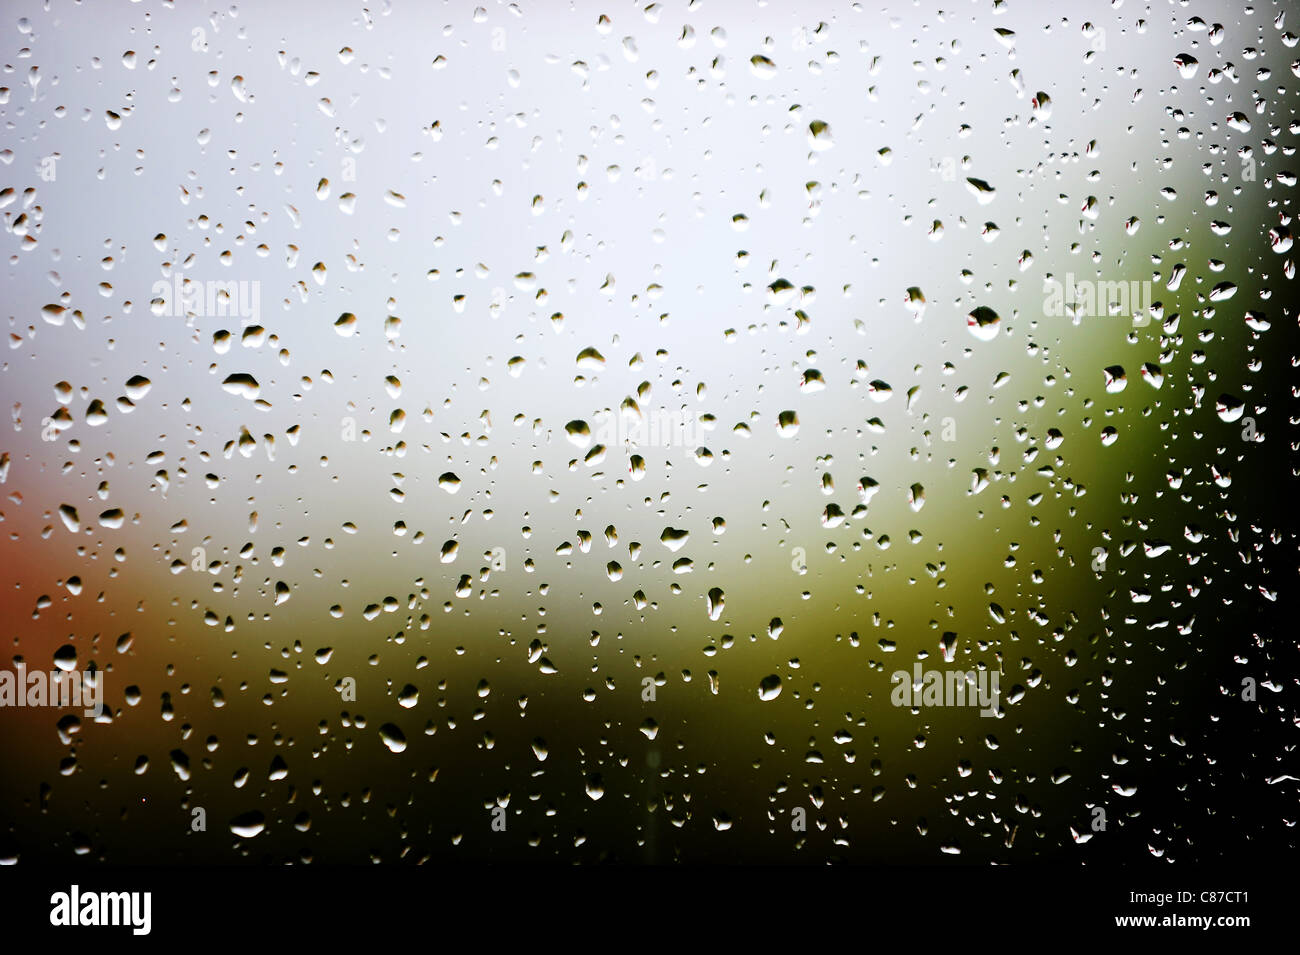 Regen Sie am Fenster eines Hauses in Bolton, Lancashire, England. Bild von Paul Heyes, Sonntag, 9. Oktober 2011. Stockfoto